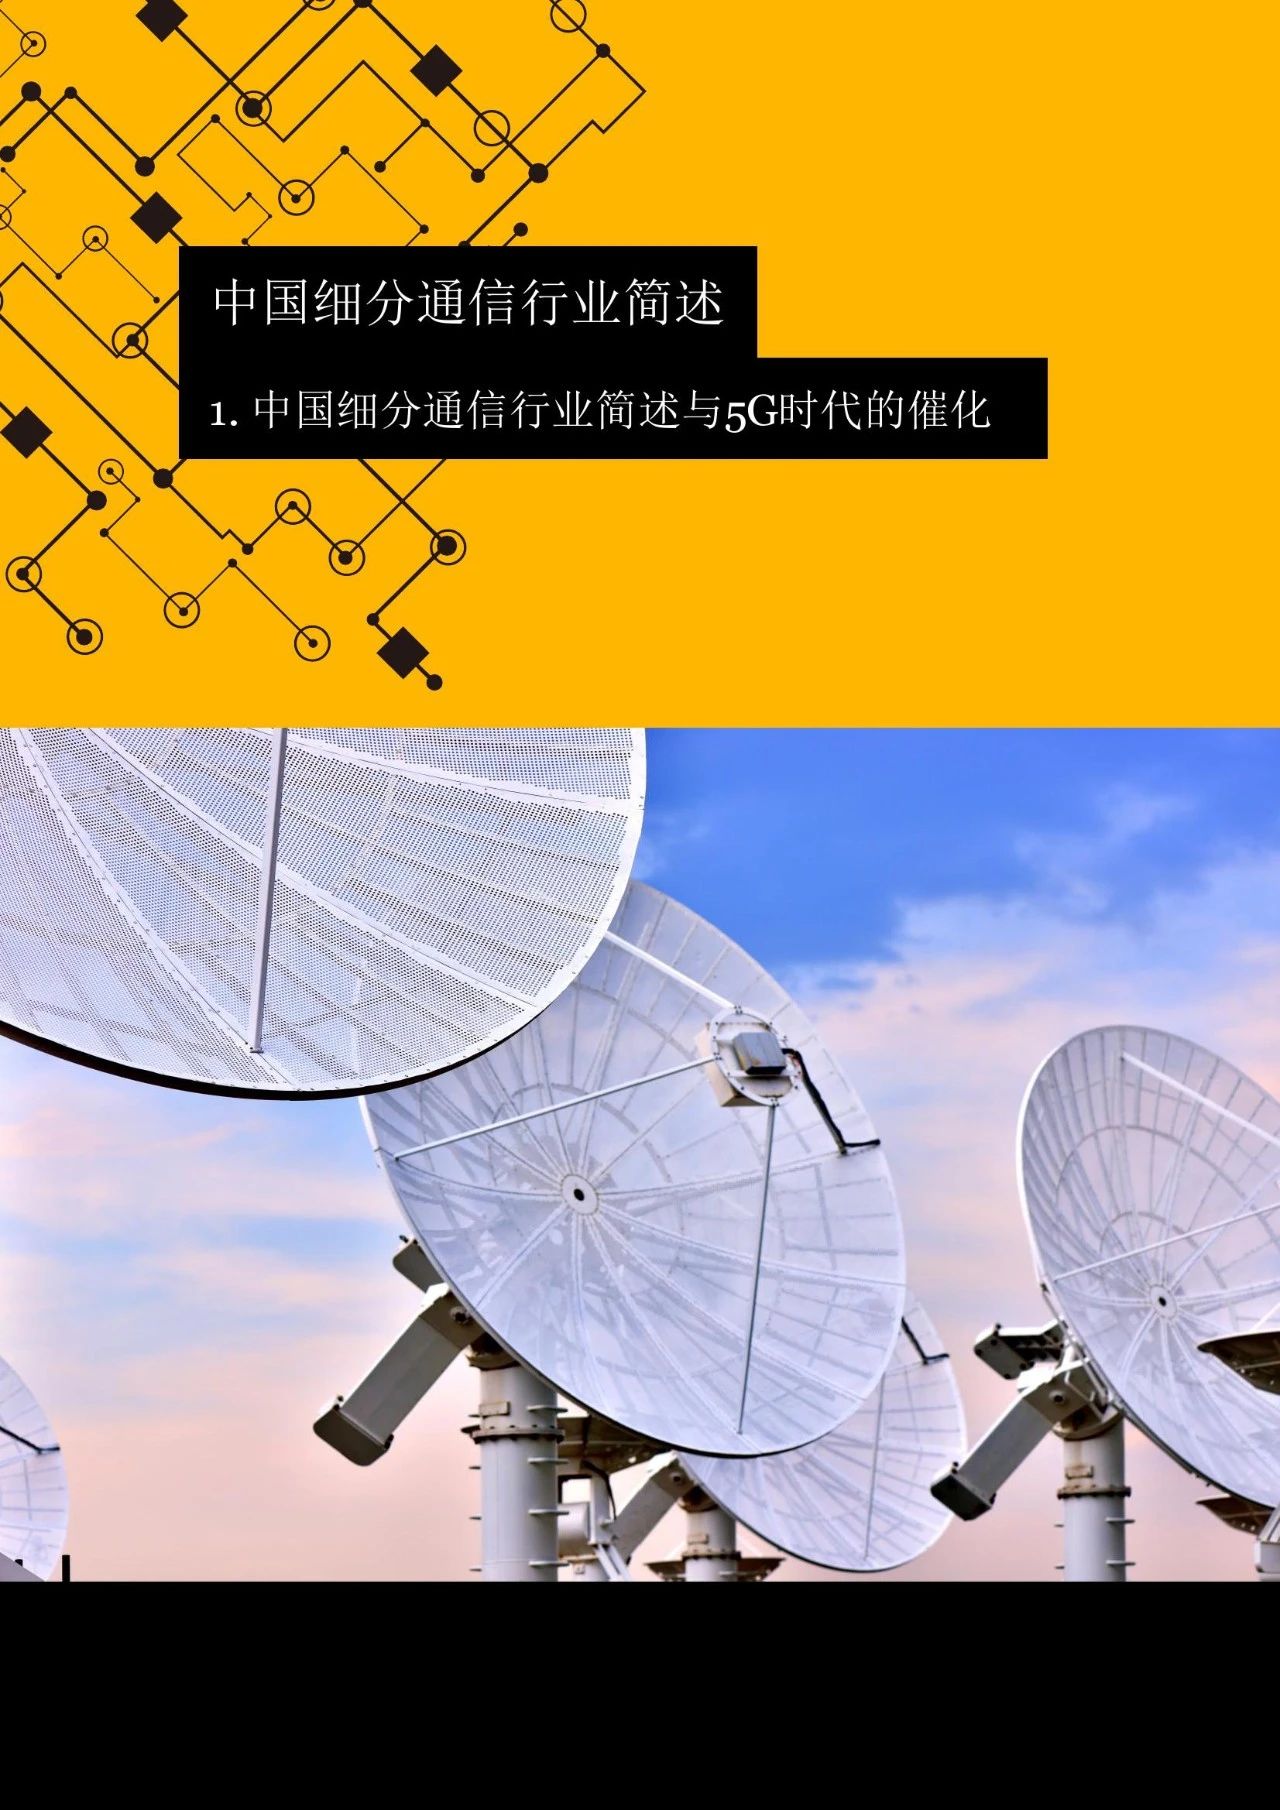 上海 5G 手机研发中心：引领未来通信时代的创新基地  第2张